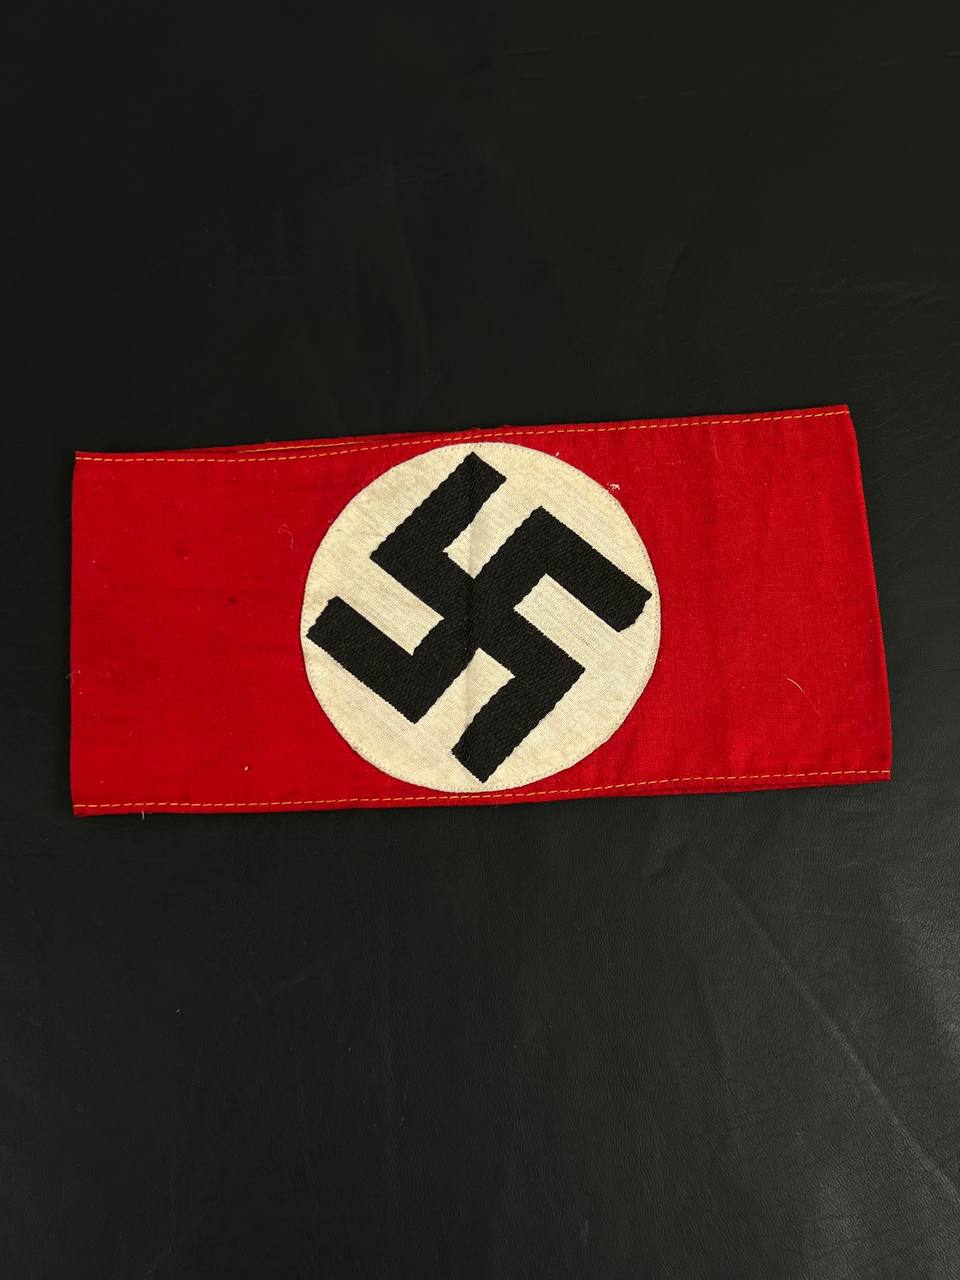 Нарукавная повязка NSDAP. От Алексея С.